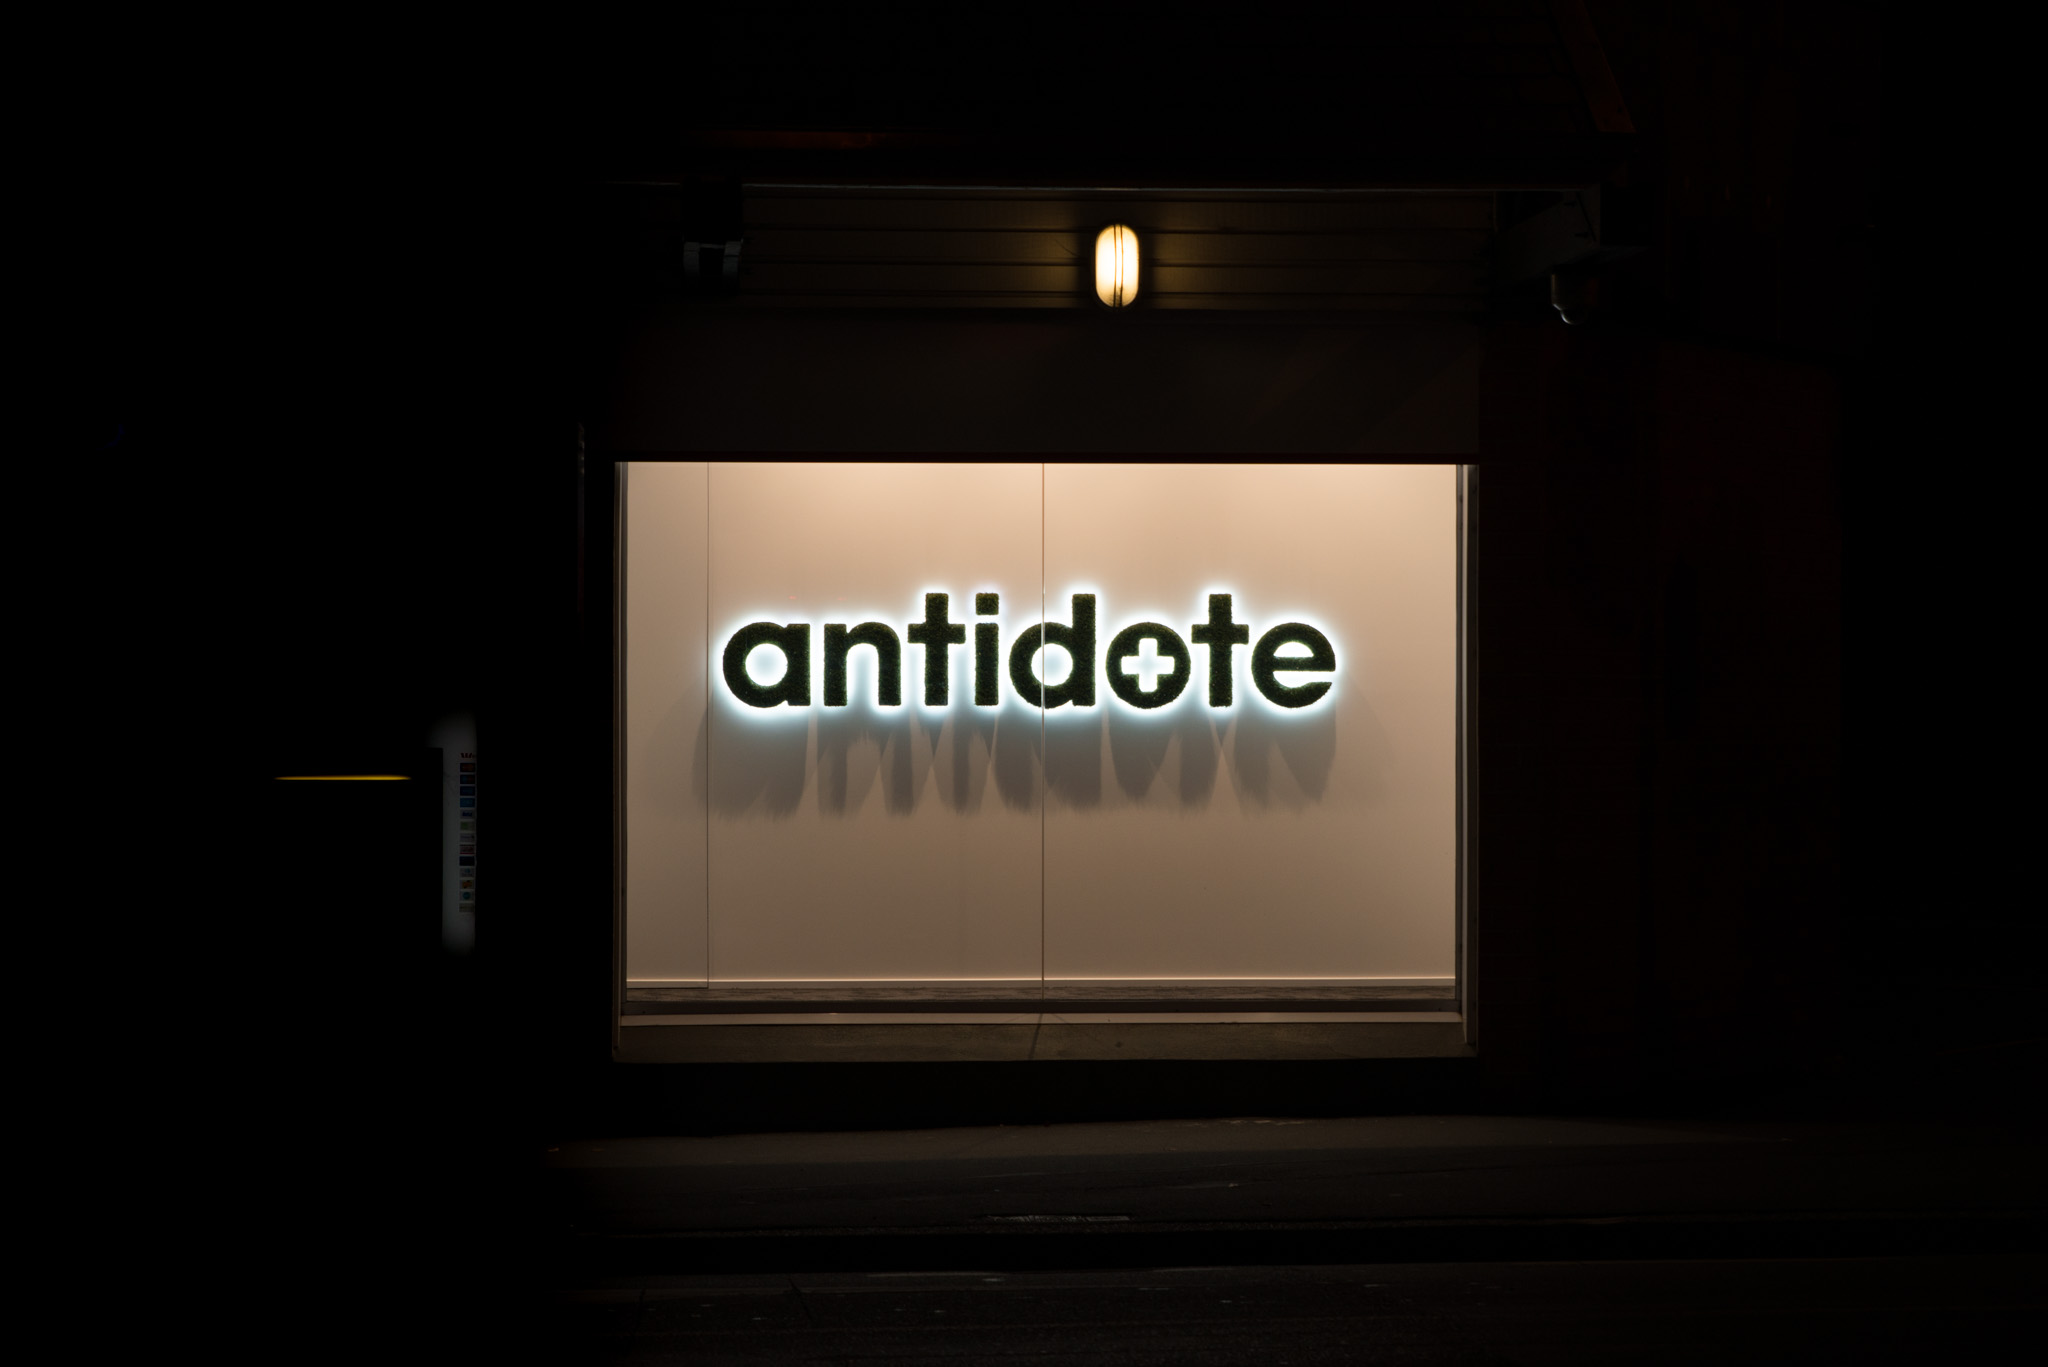 Gardens Antidote illuminated sign NZSDA award winner night